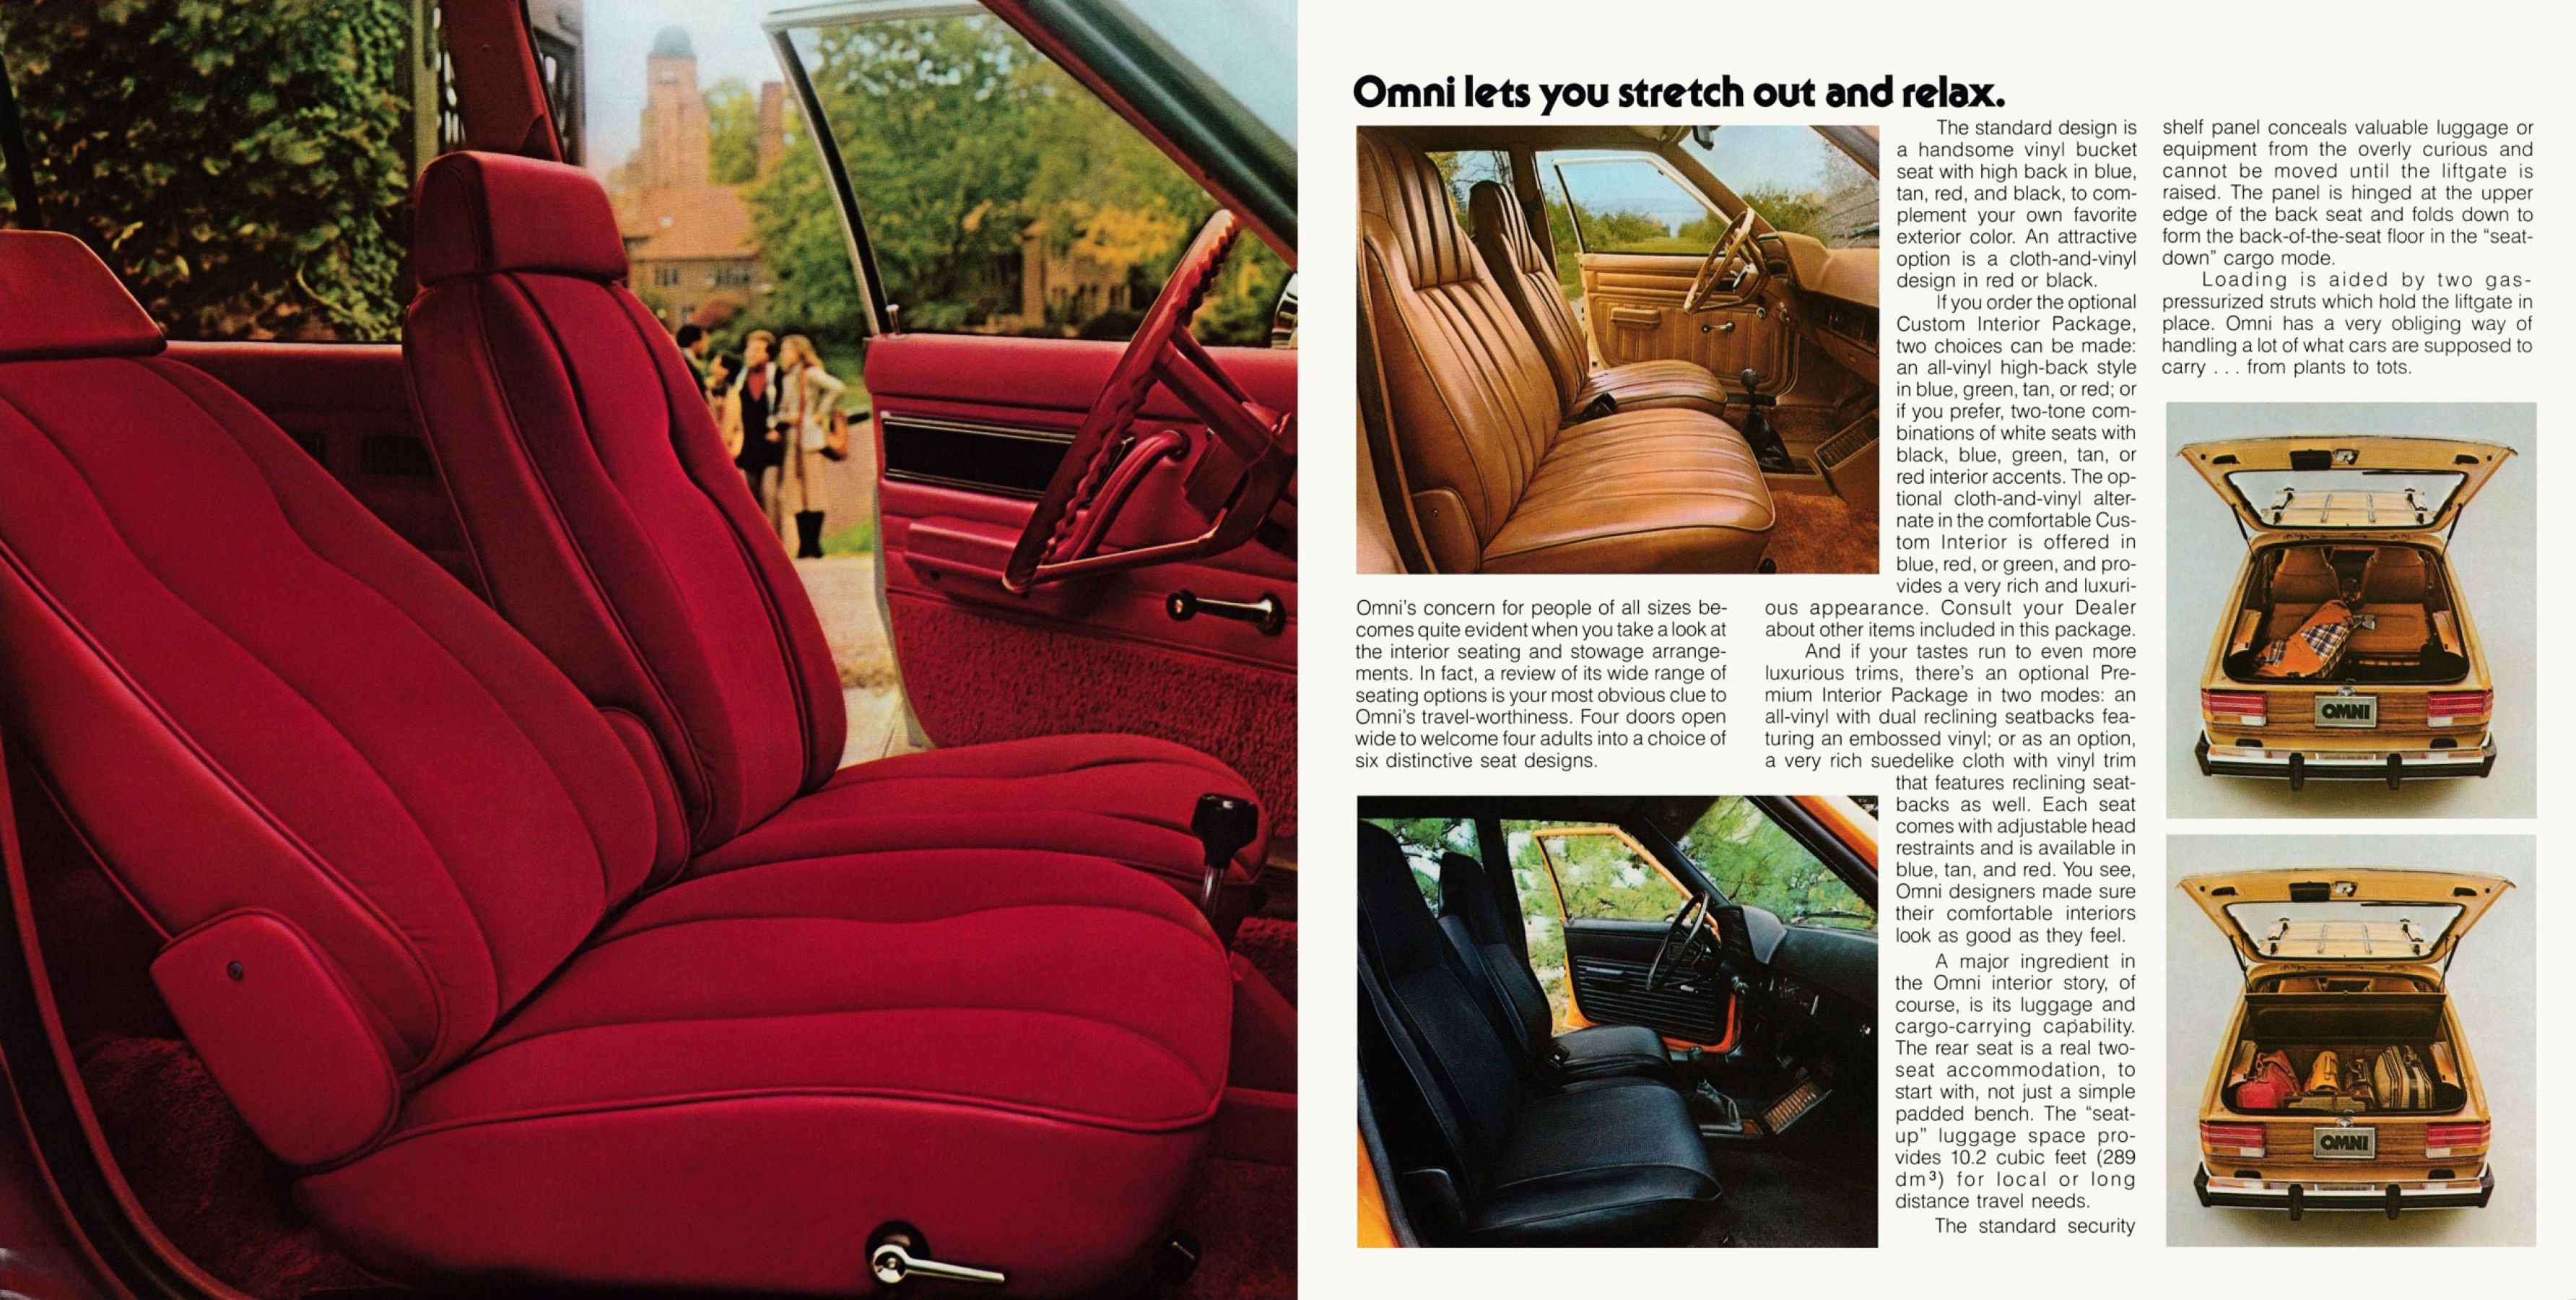 1978 Dodge Omni (Rev)-06-07